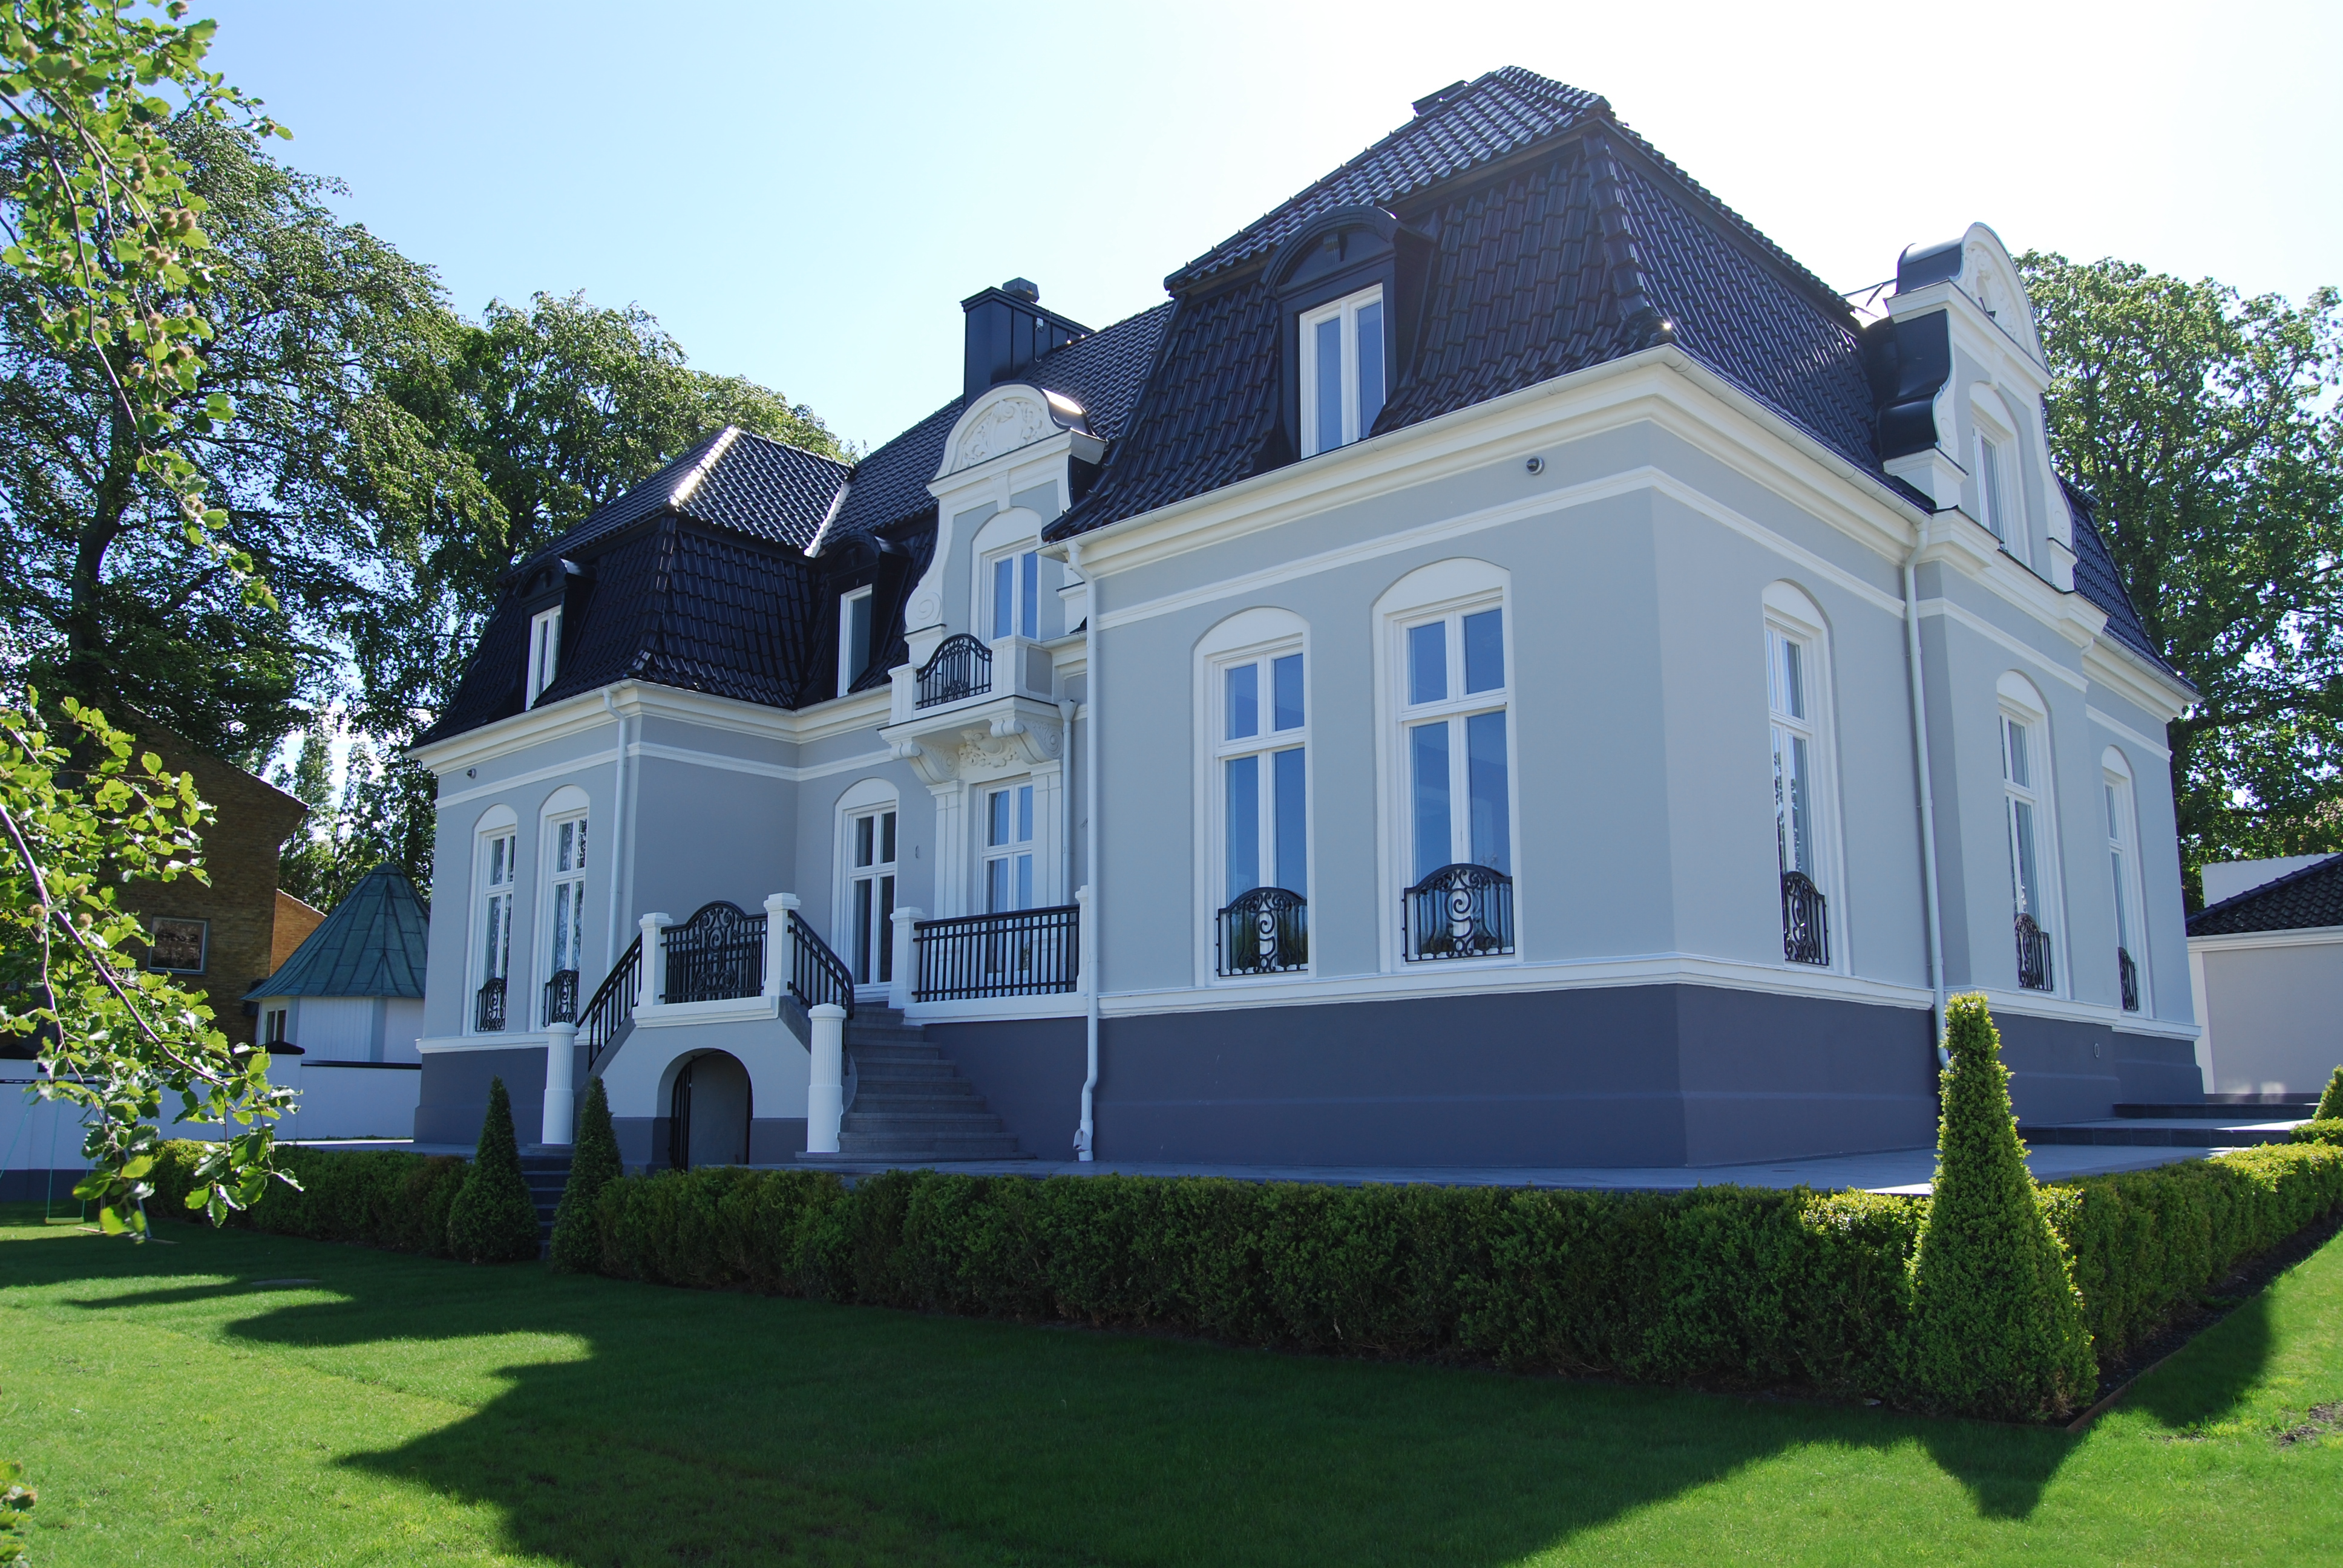 2007 köpte Zlatan huset i Limhamn för 30 miljoner. Nu är det sålt.